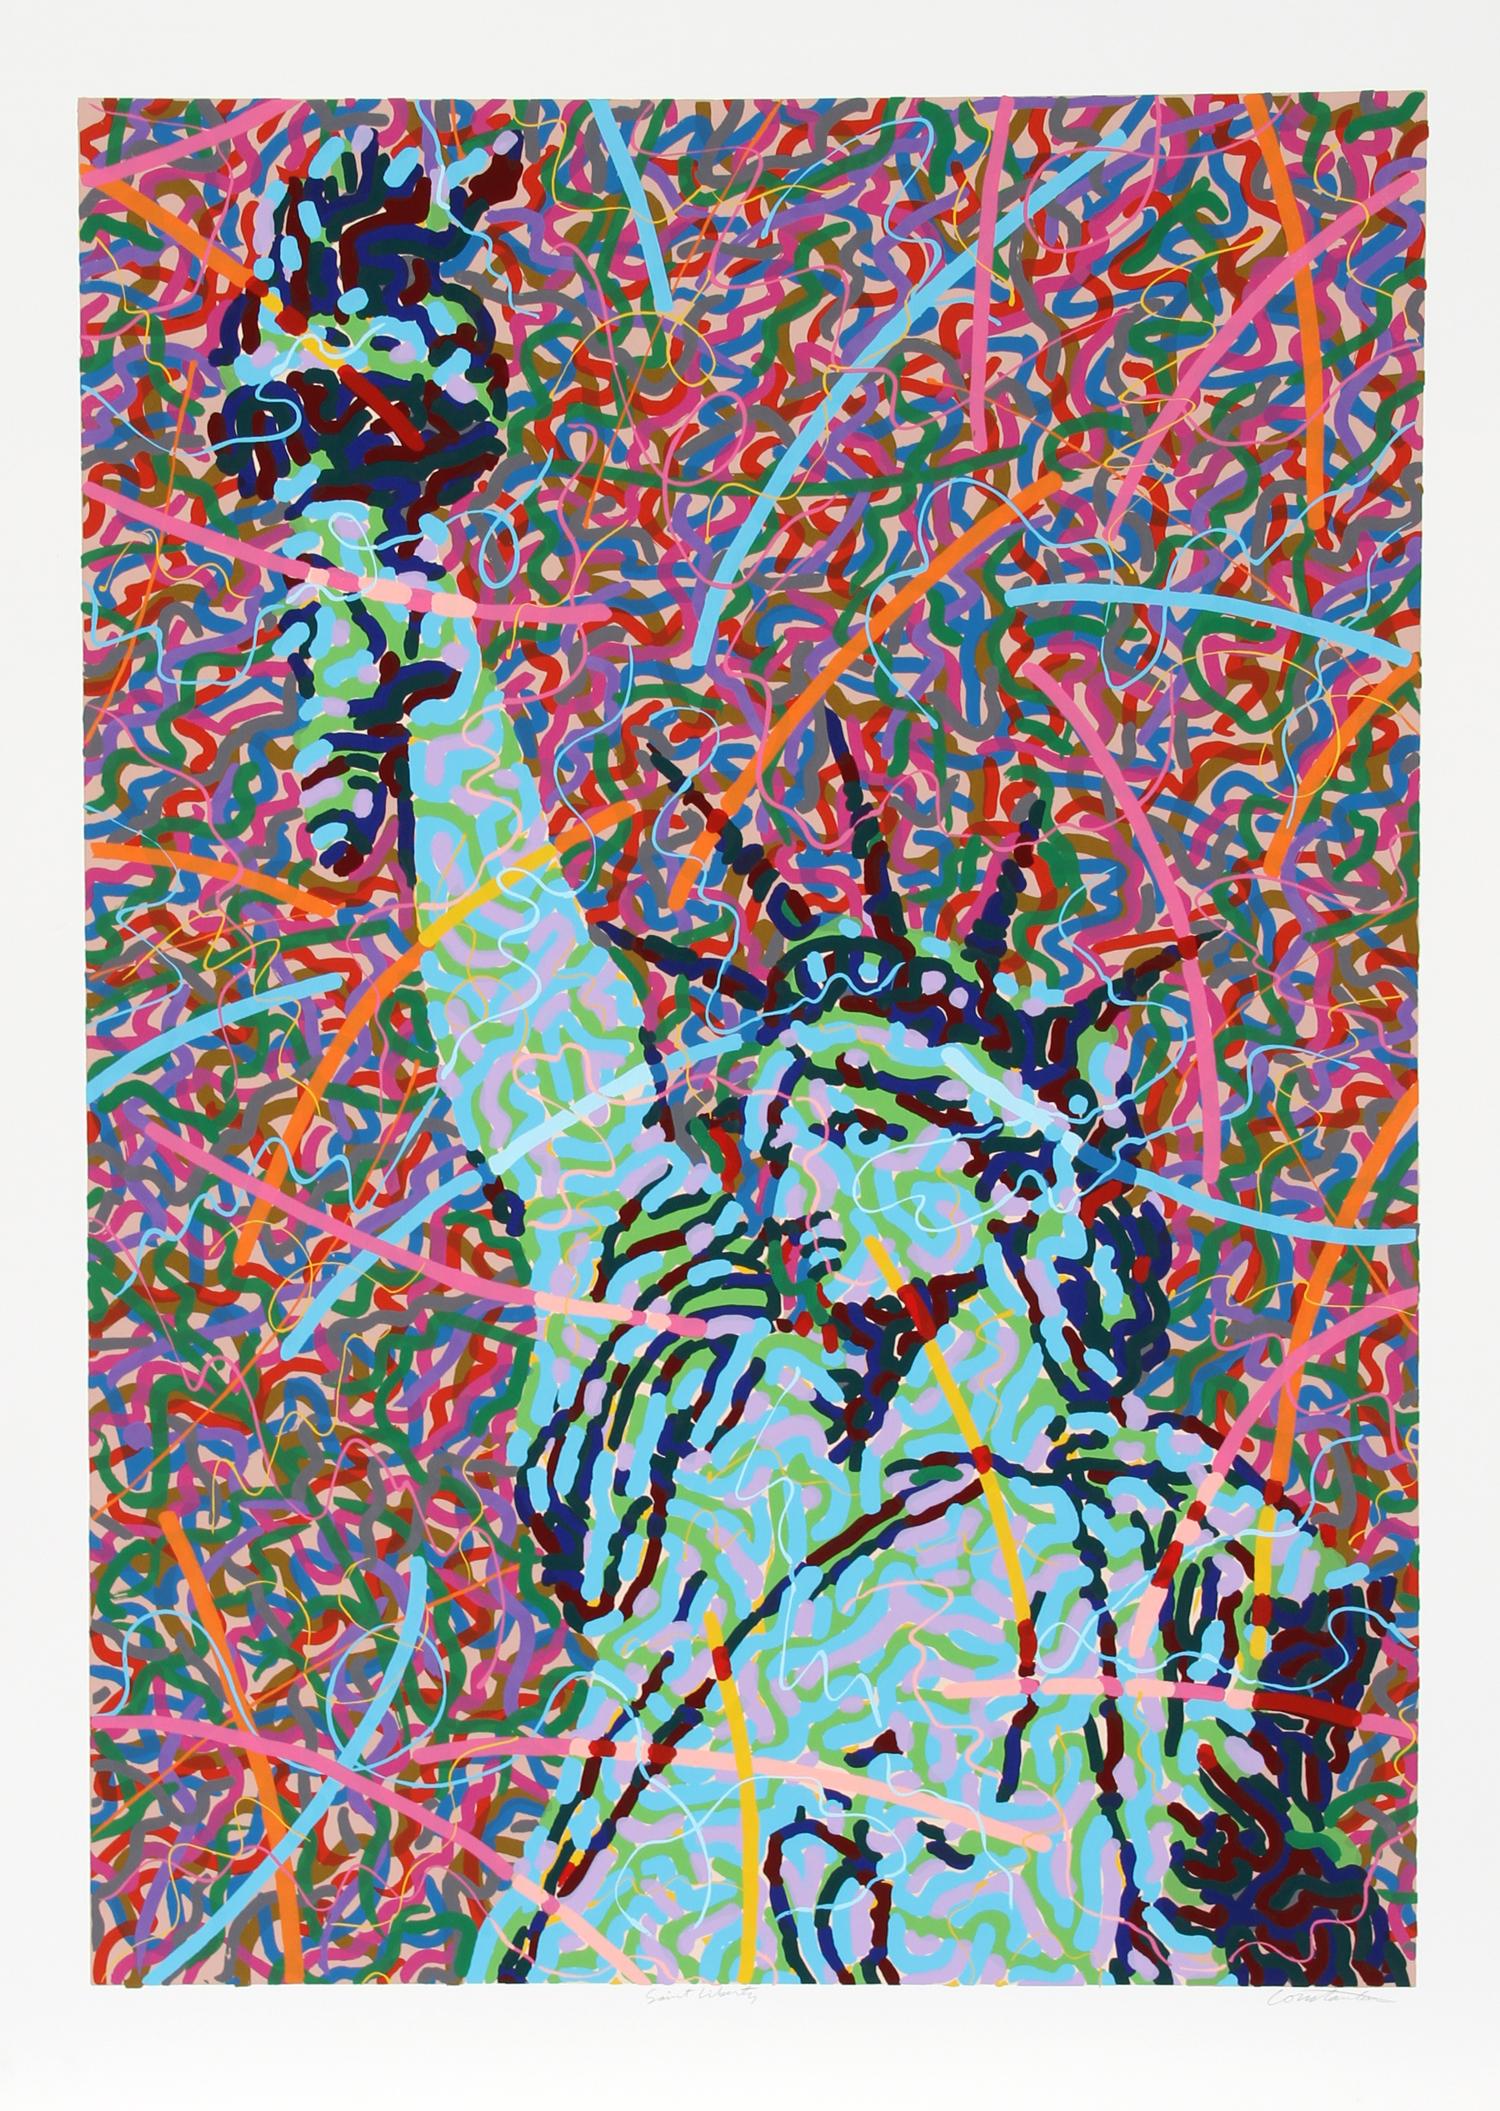 Artistics : Greg Constantine, Américain (1938 -  )
Portefeuille : Collectional S
Titre : Saint Liberty
Année :  1986
Support : Sérigraphie, signée et numérotée au crayon 
Édition : 500
Taille du papier : 42 x 30 pouces 